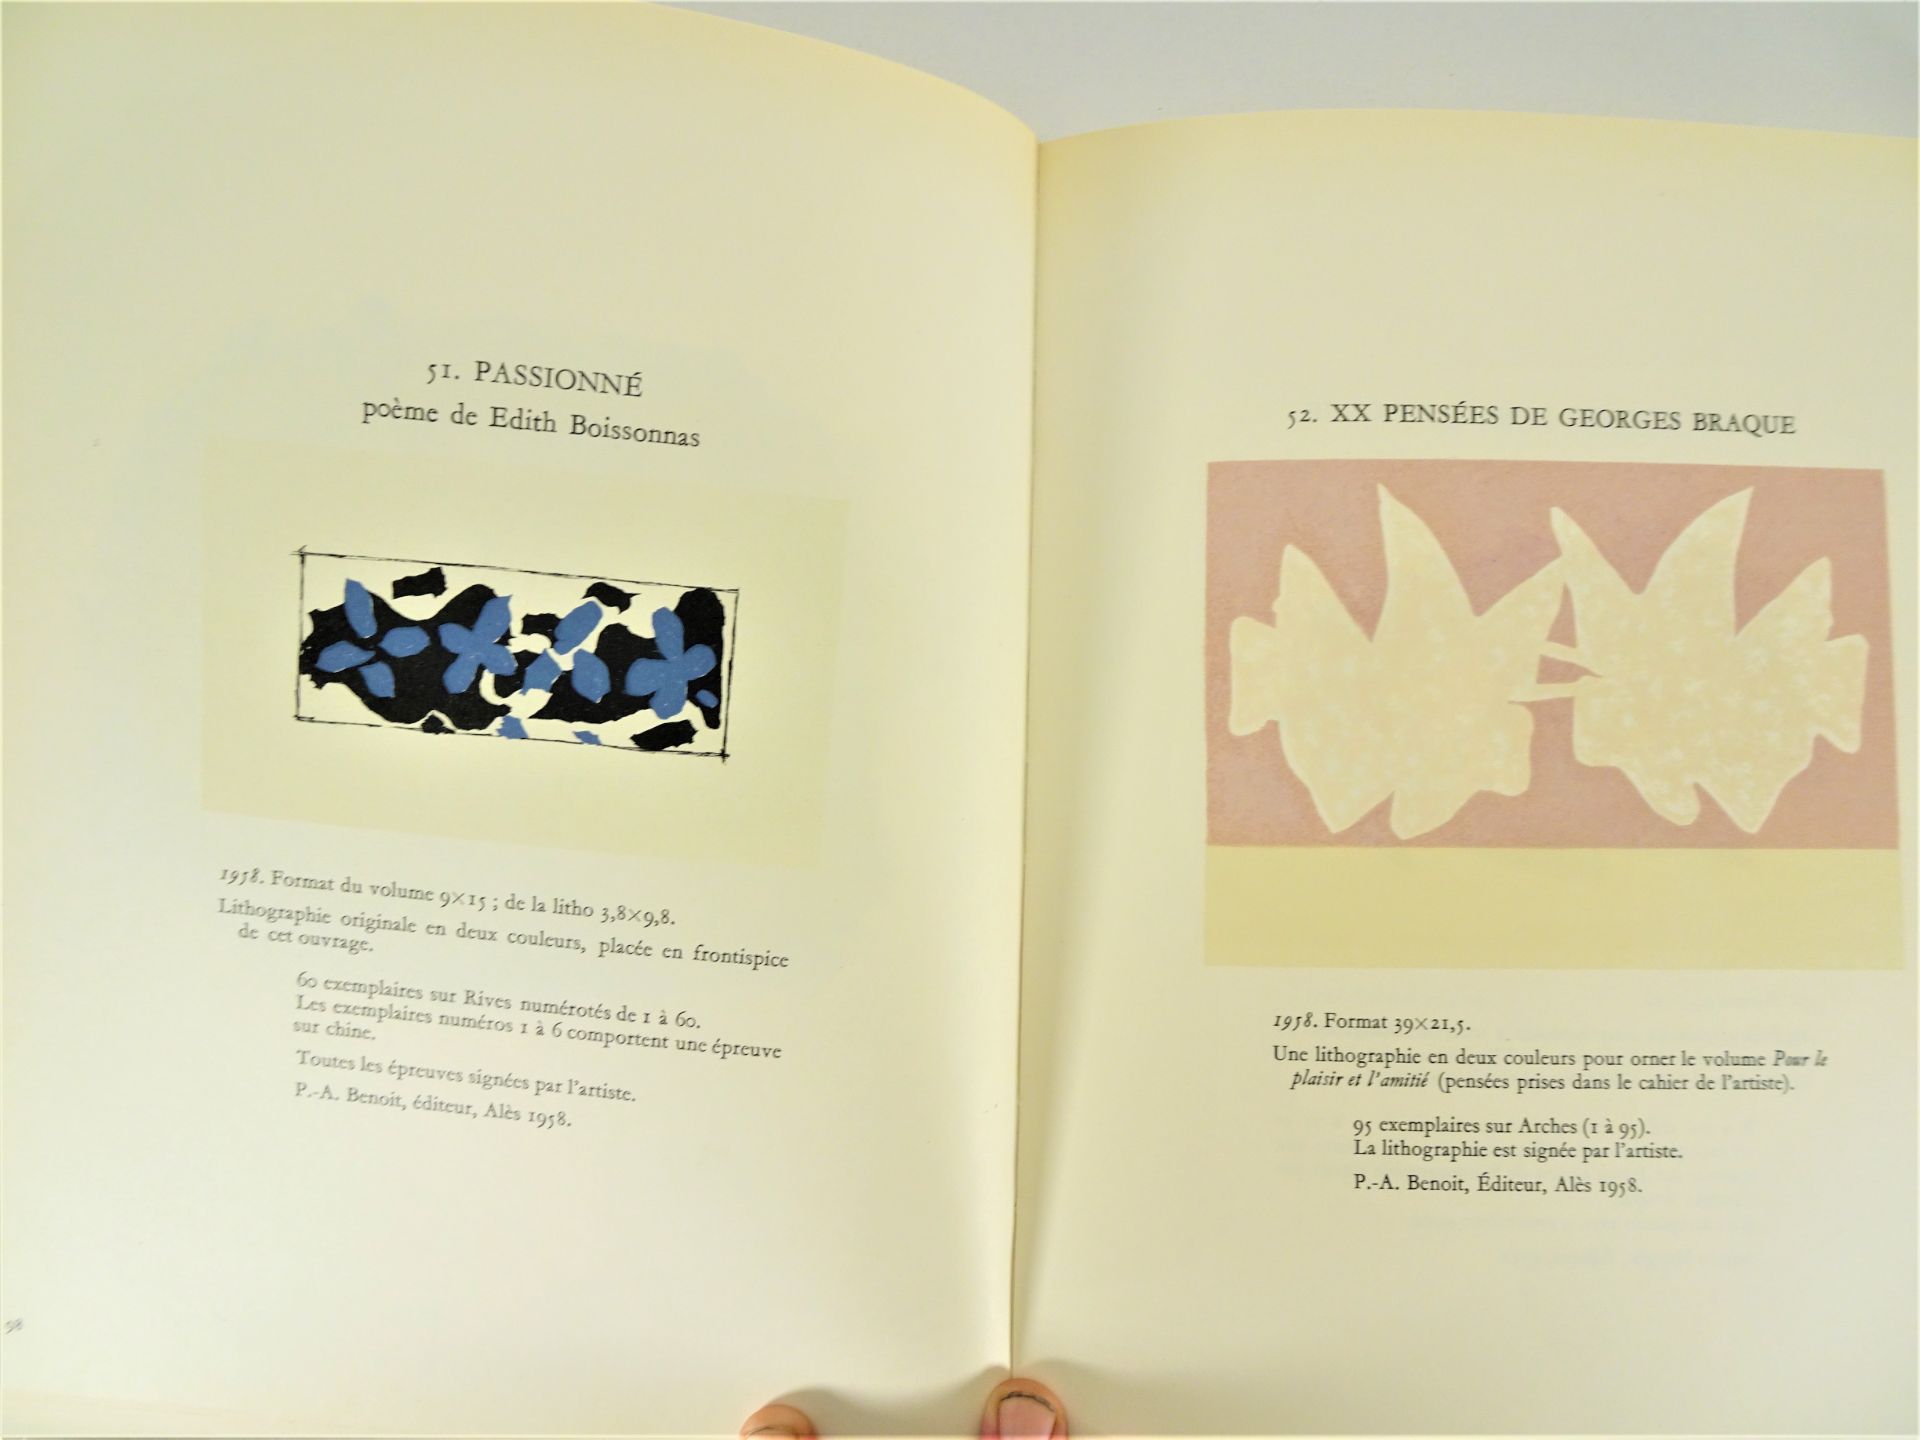 |Art| George Braque, "Braque lithographe", 1963, édition limitée. Fernand Mourlot, catalogue - Image 4 of 12